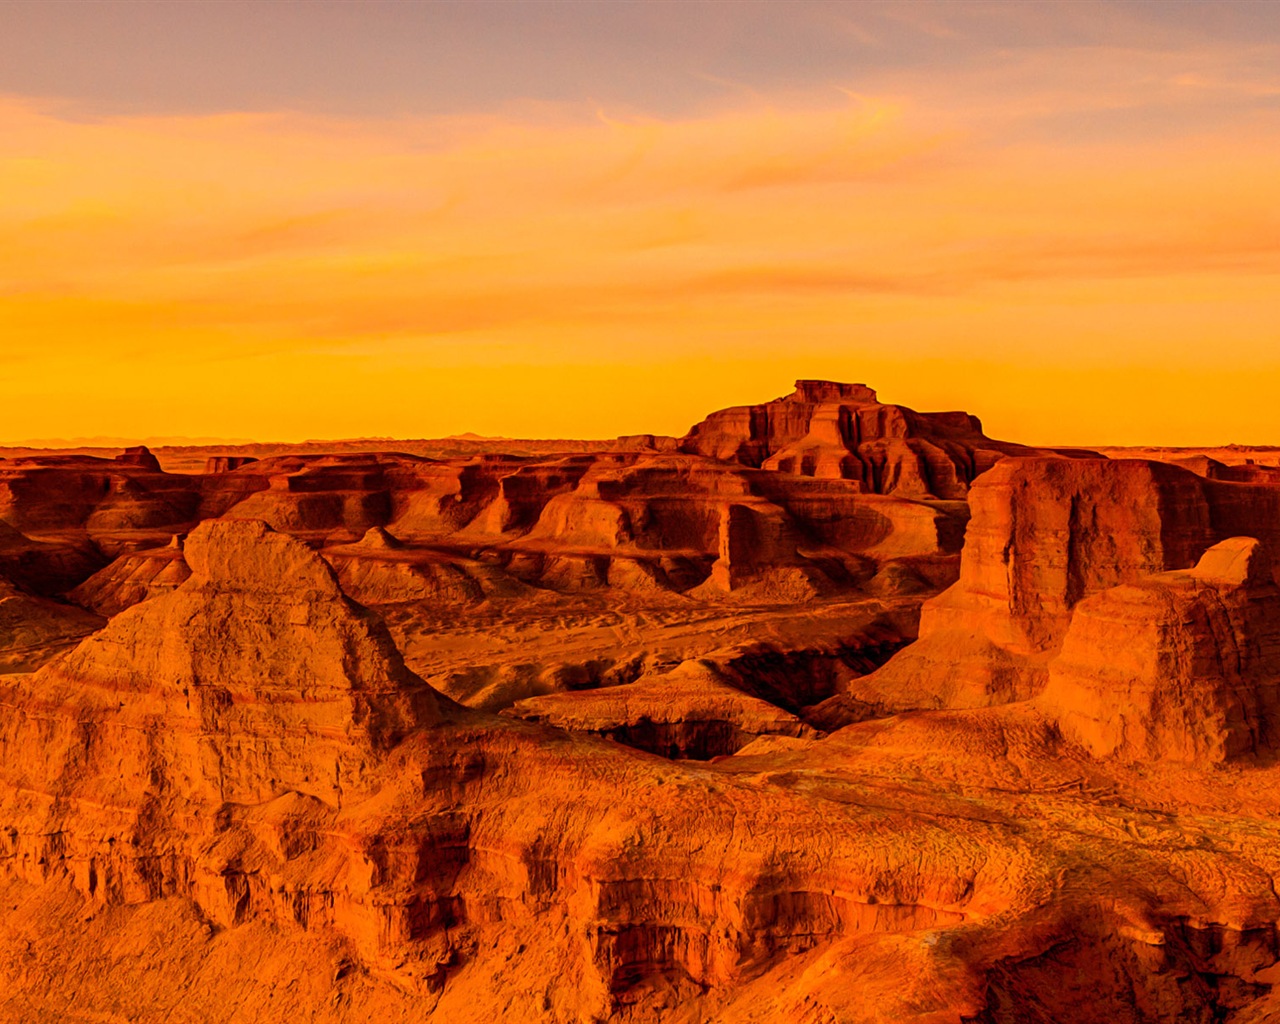 Les déserts chauds et arides, de Windows 8 fonds d'écran widescreen panoramique #6 - 1280x1024